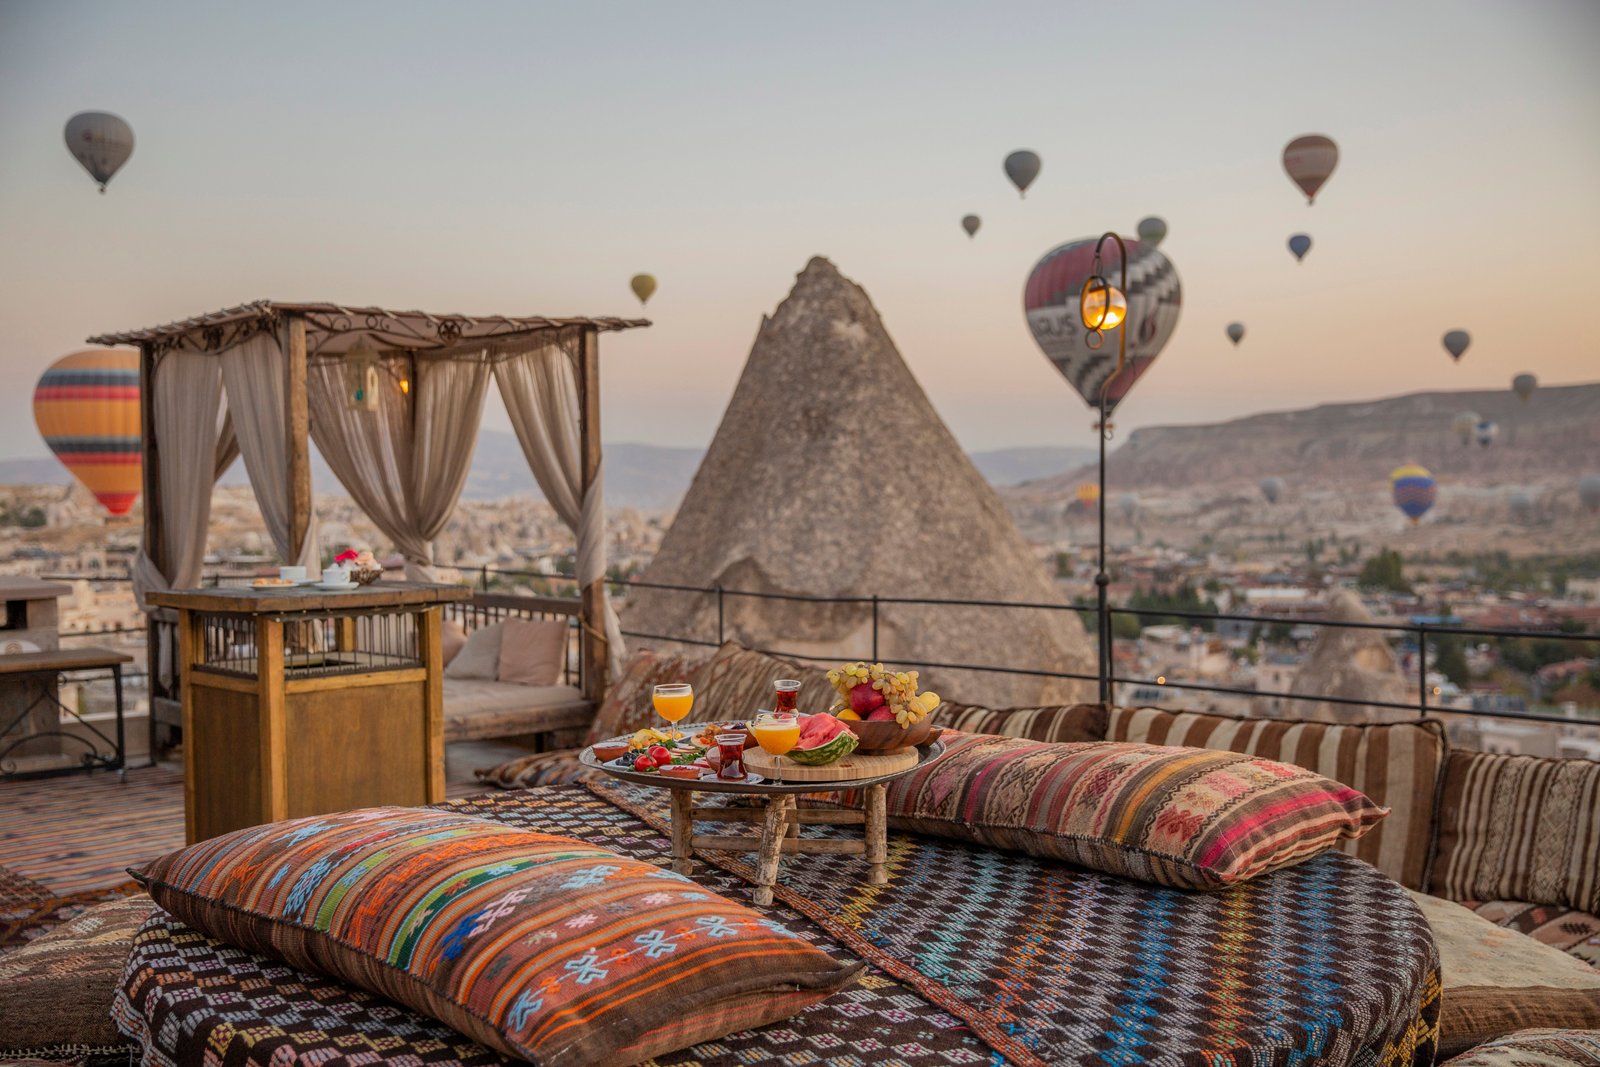 6 nopti in Cappadocia – 252 euro (zbor si cazare nota 8.6 pe booking)